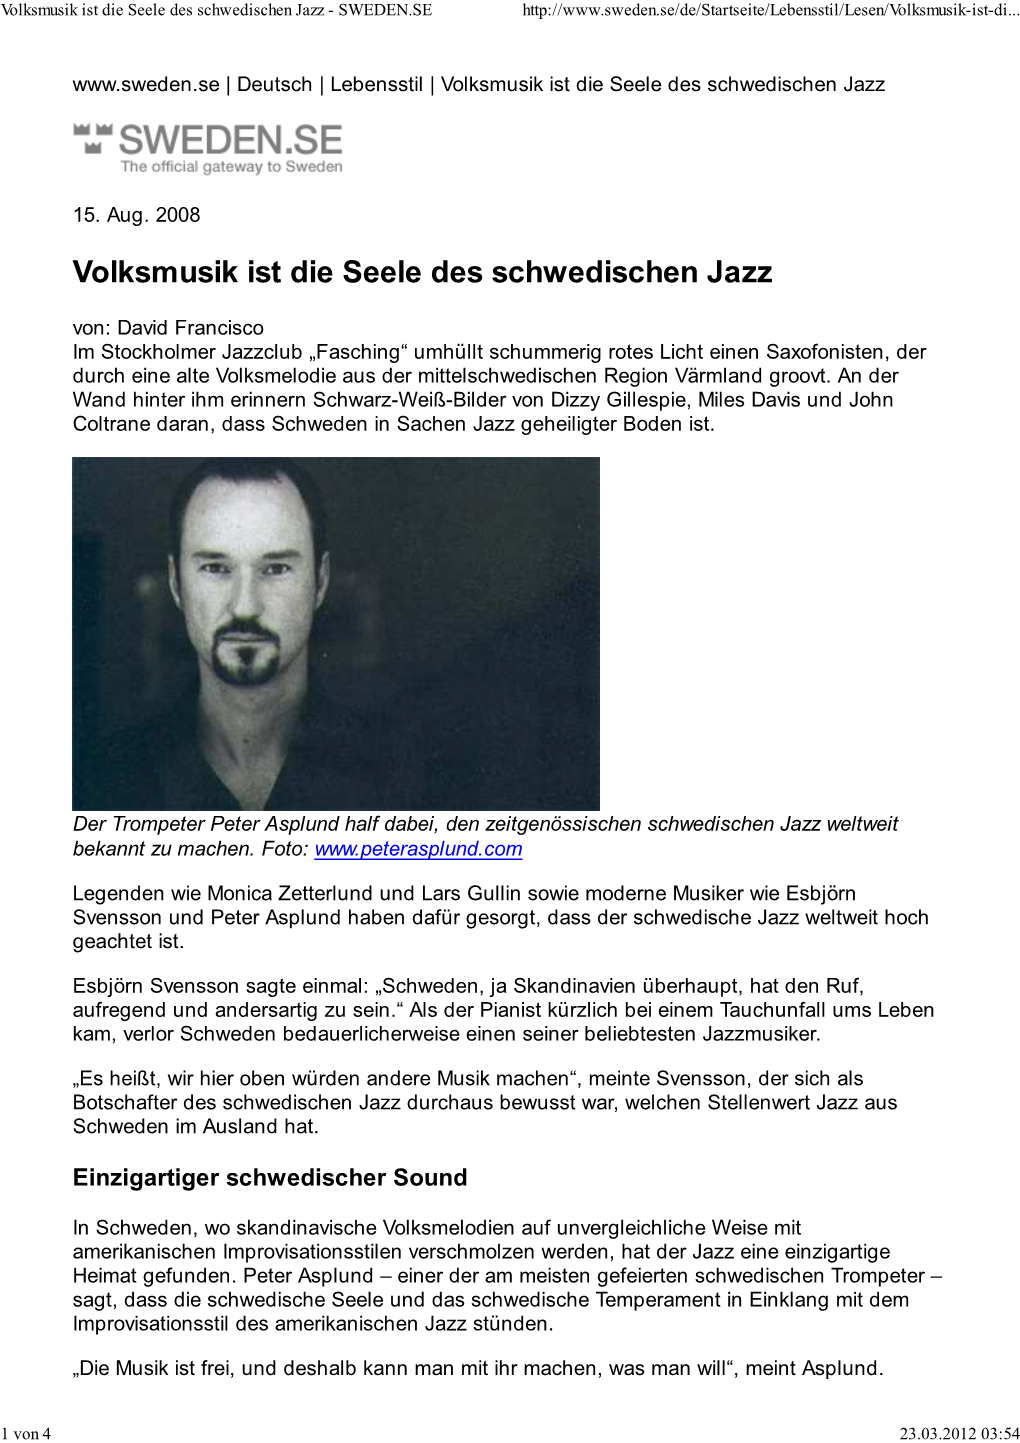 Die Seele Des Schwedischen Jazz - SWEDEN.SE